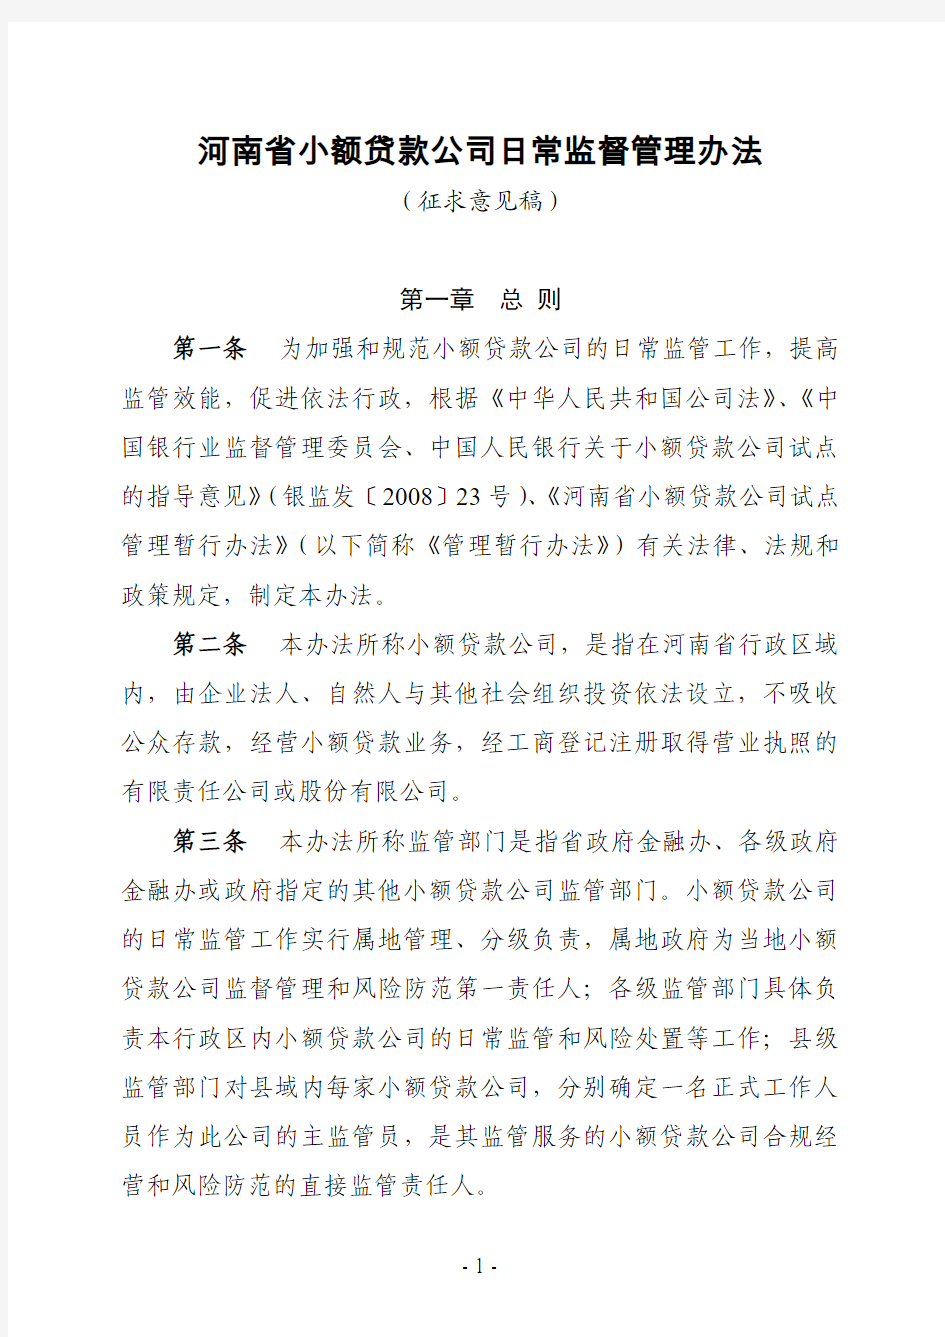 河南省小额贷款公司日常监督管理办法(征求意见稿)